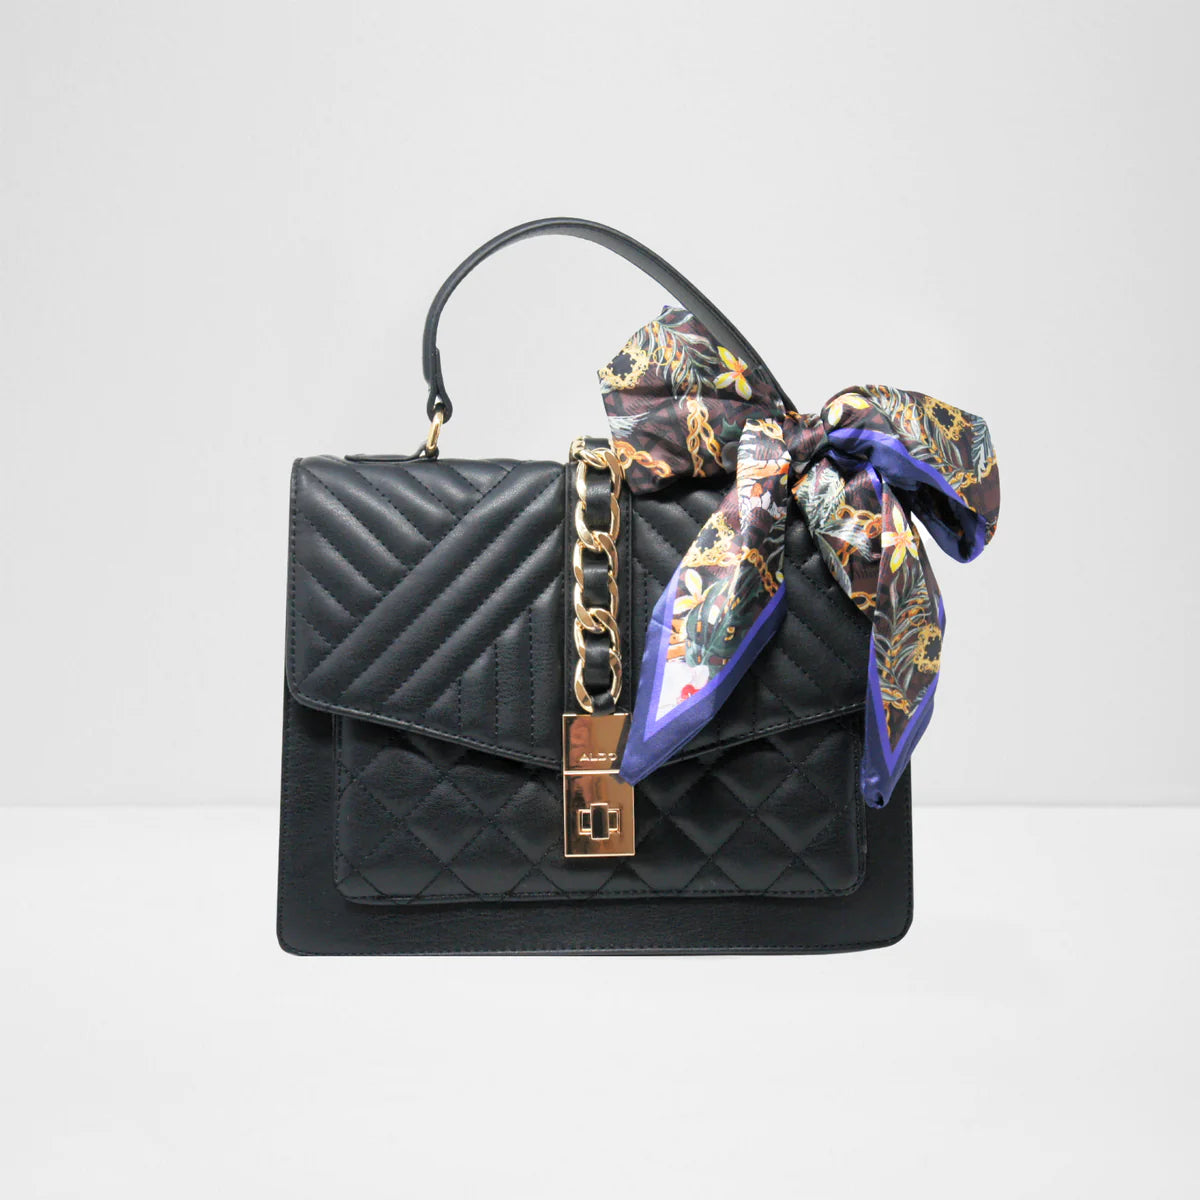 ELROISSA - sale's sale clutches handbags for sale at ALDO Shoes. | Clutch  handbag, Clutch bag, Bags